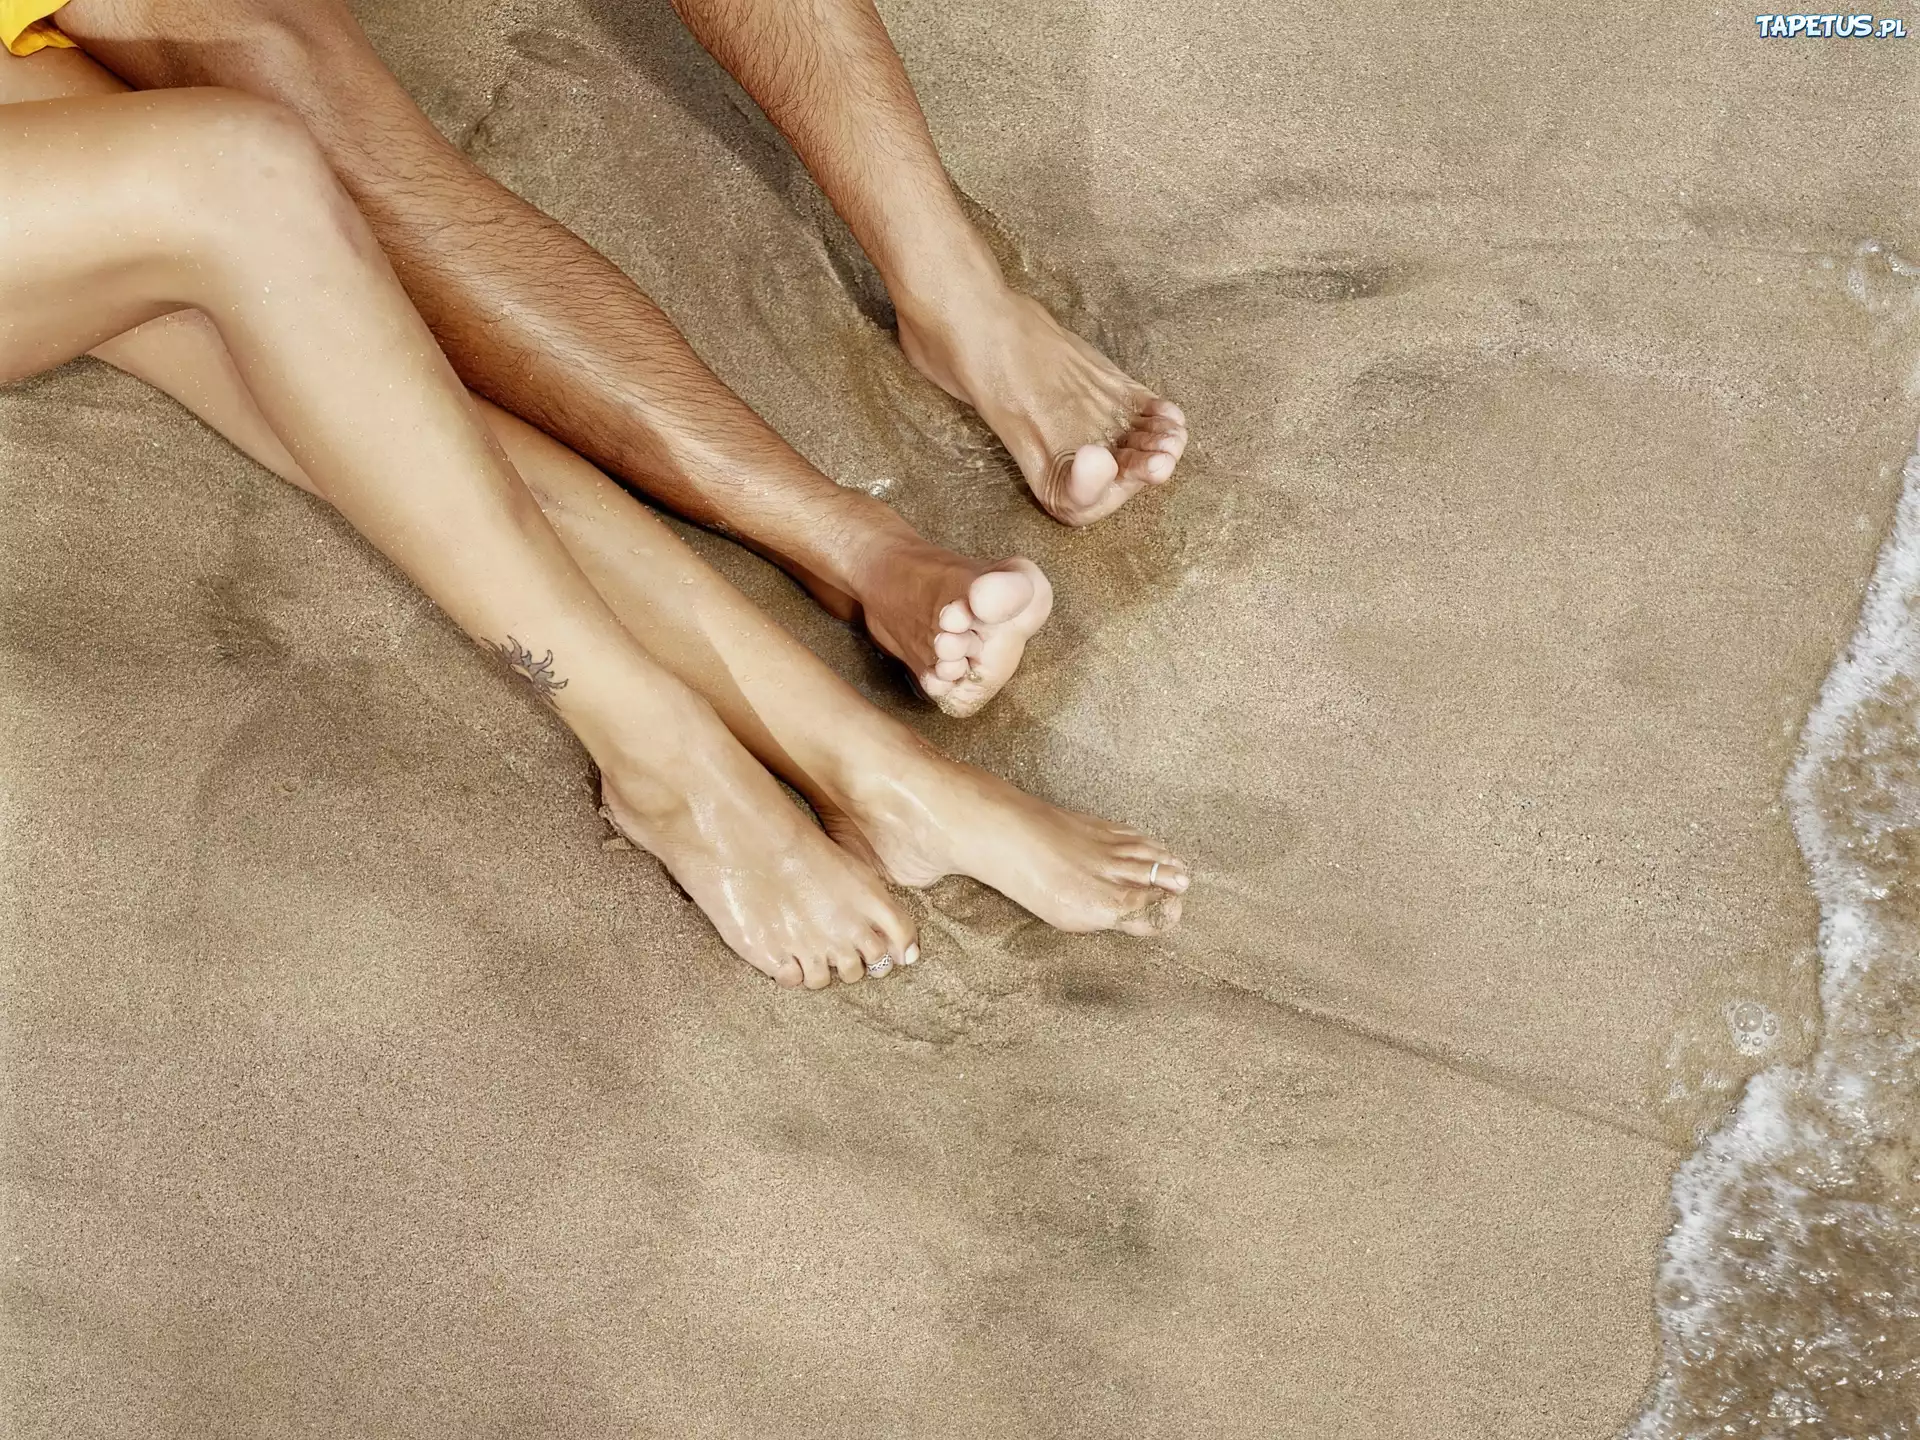 Женские ноги у мужчин. Женские ноги. Мужские и женские ноги на пляже. Красивые ноги мужские и женские. Мужские и женские ступни.